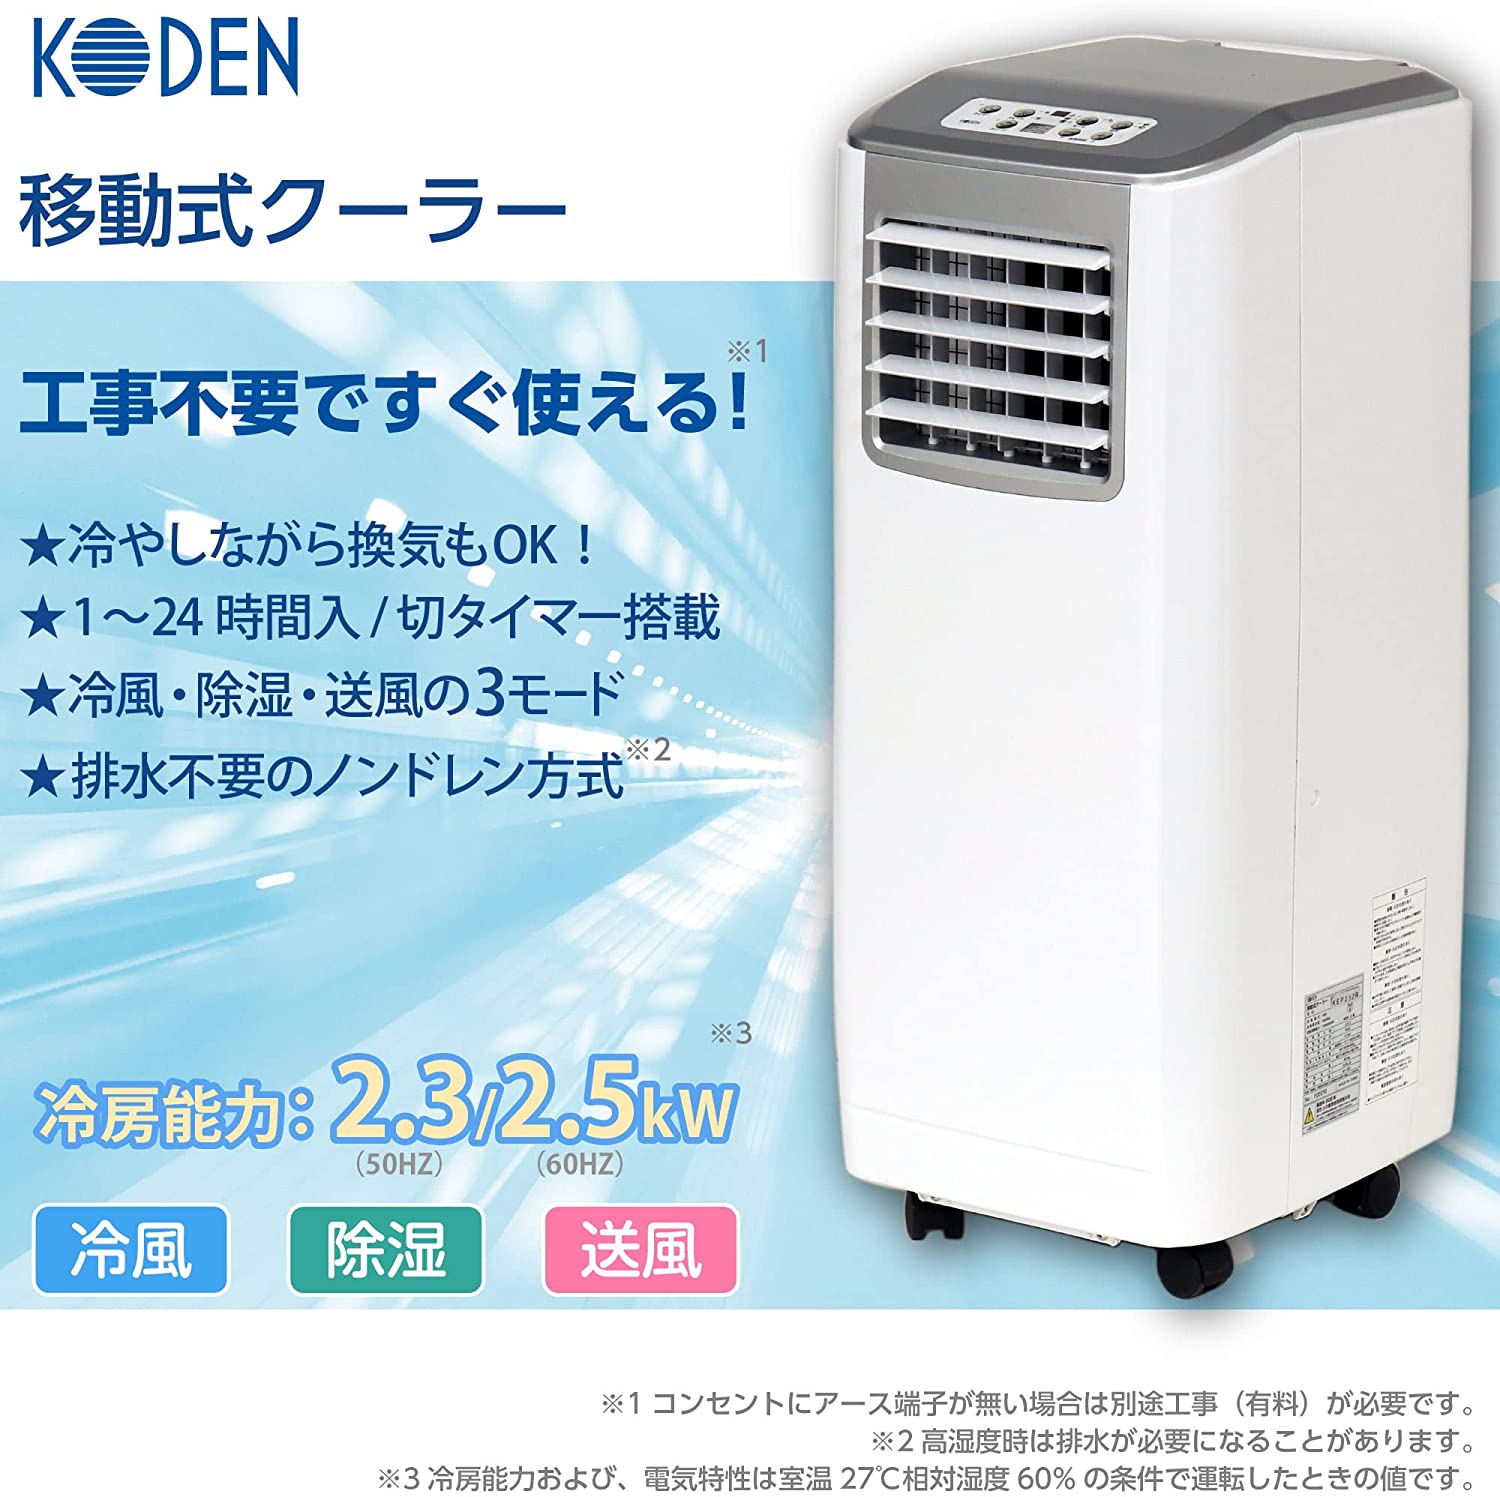 【2022年モデル】広電(KODEN) 移動式クーラー KEP253R